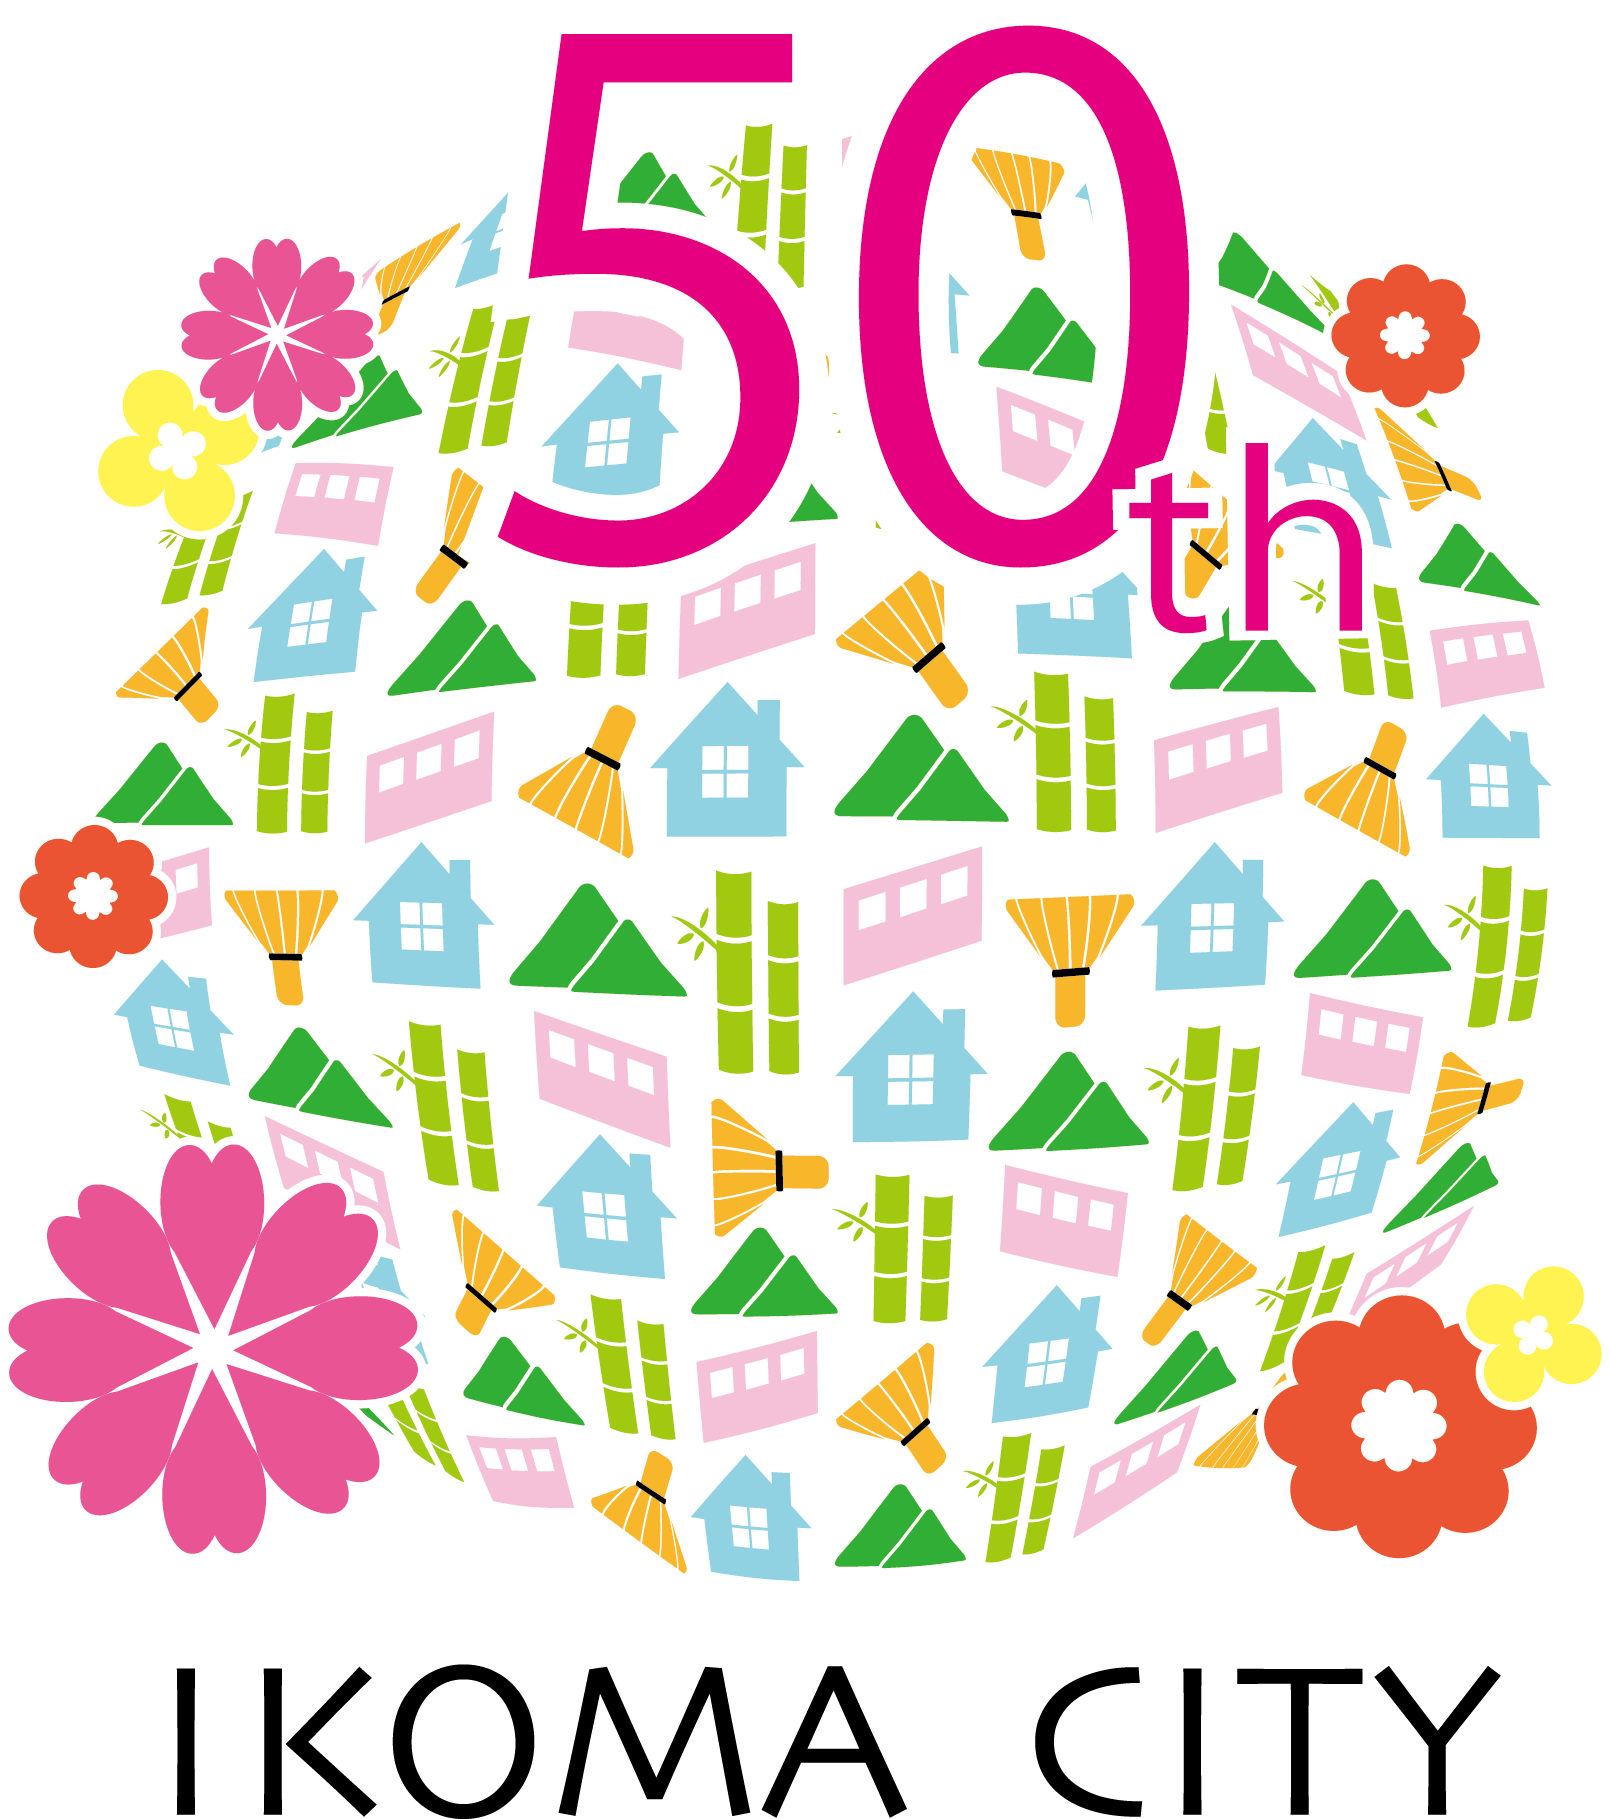 生駒市制50周年記念ロゴマークが決定しました 生駒市公式ホームページ